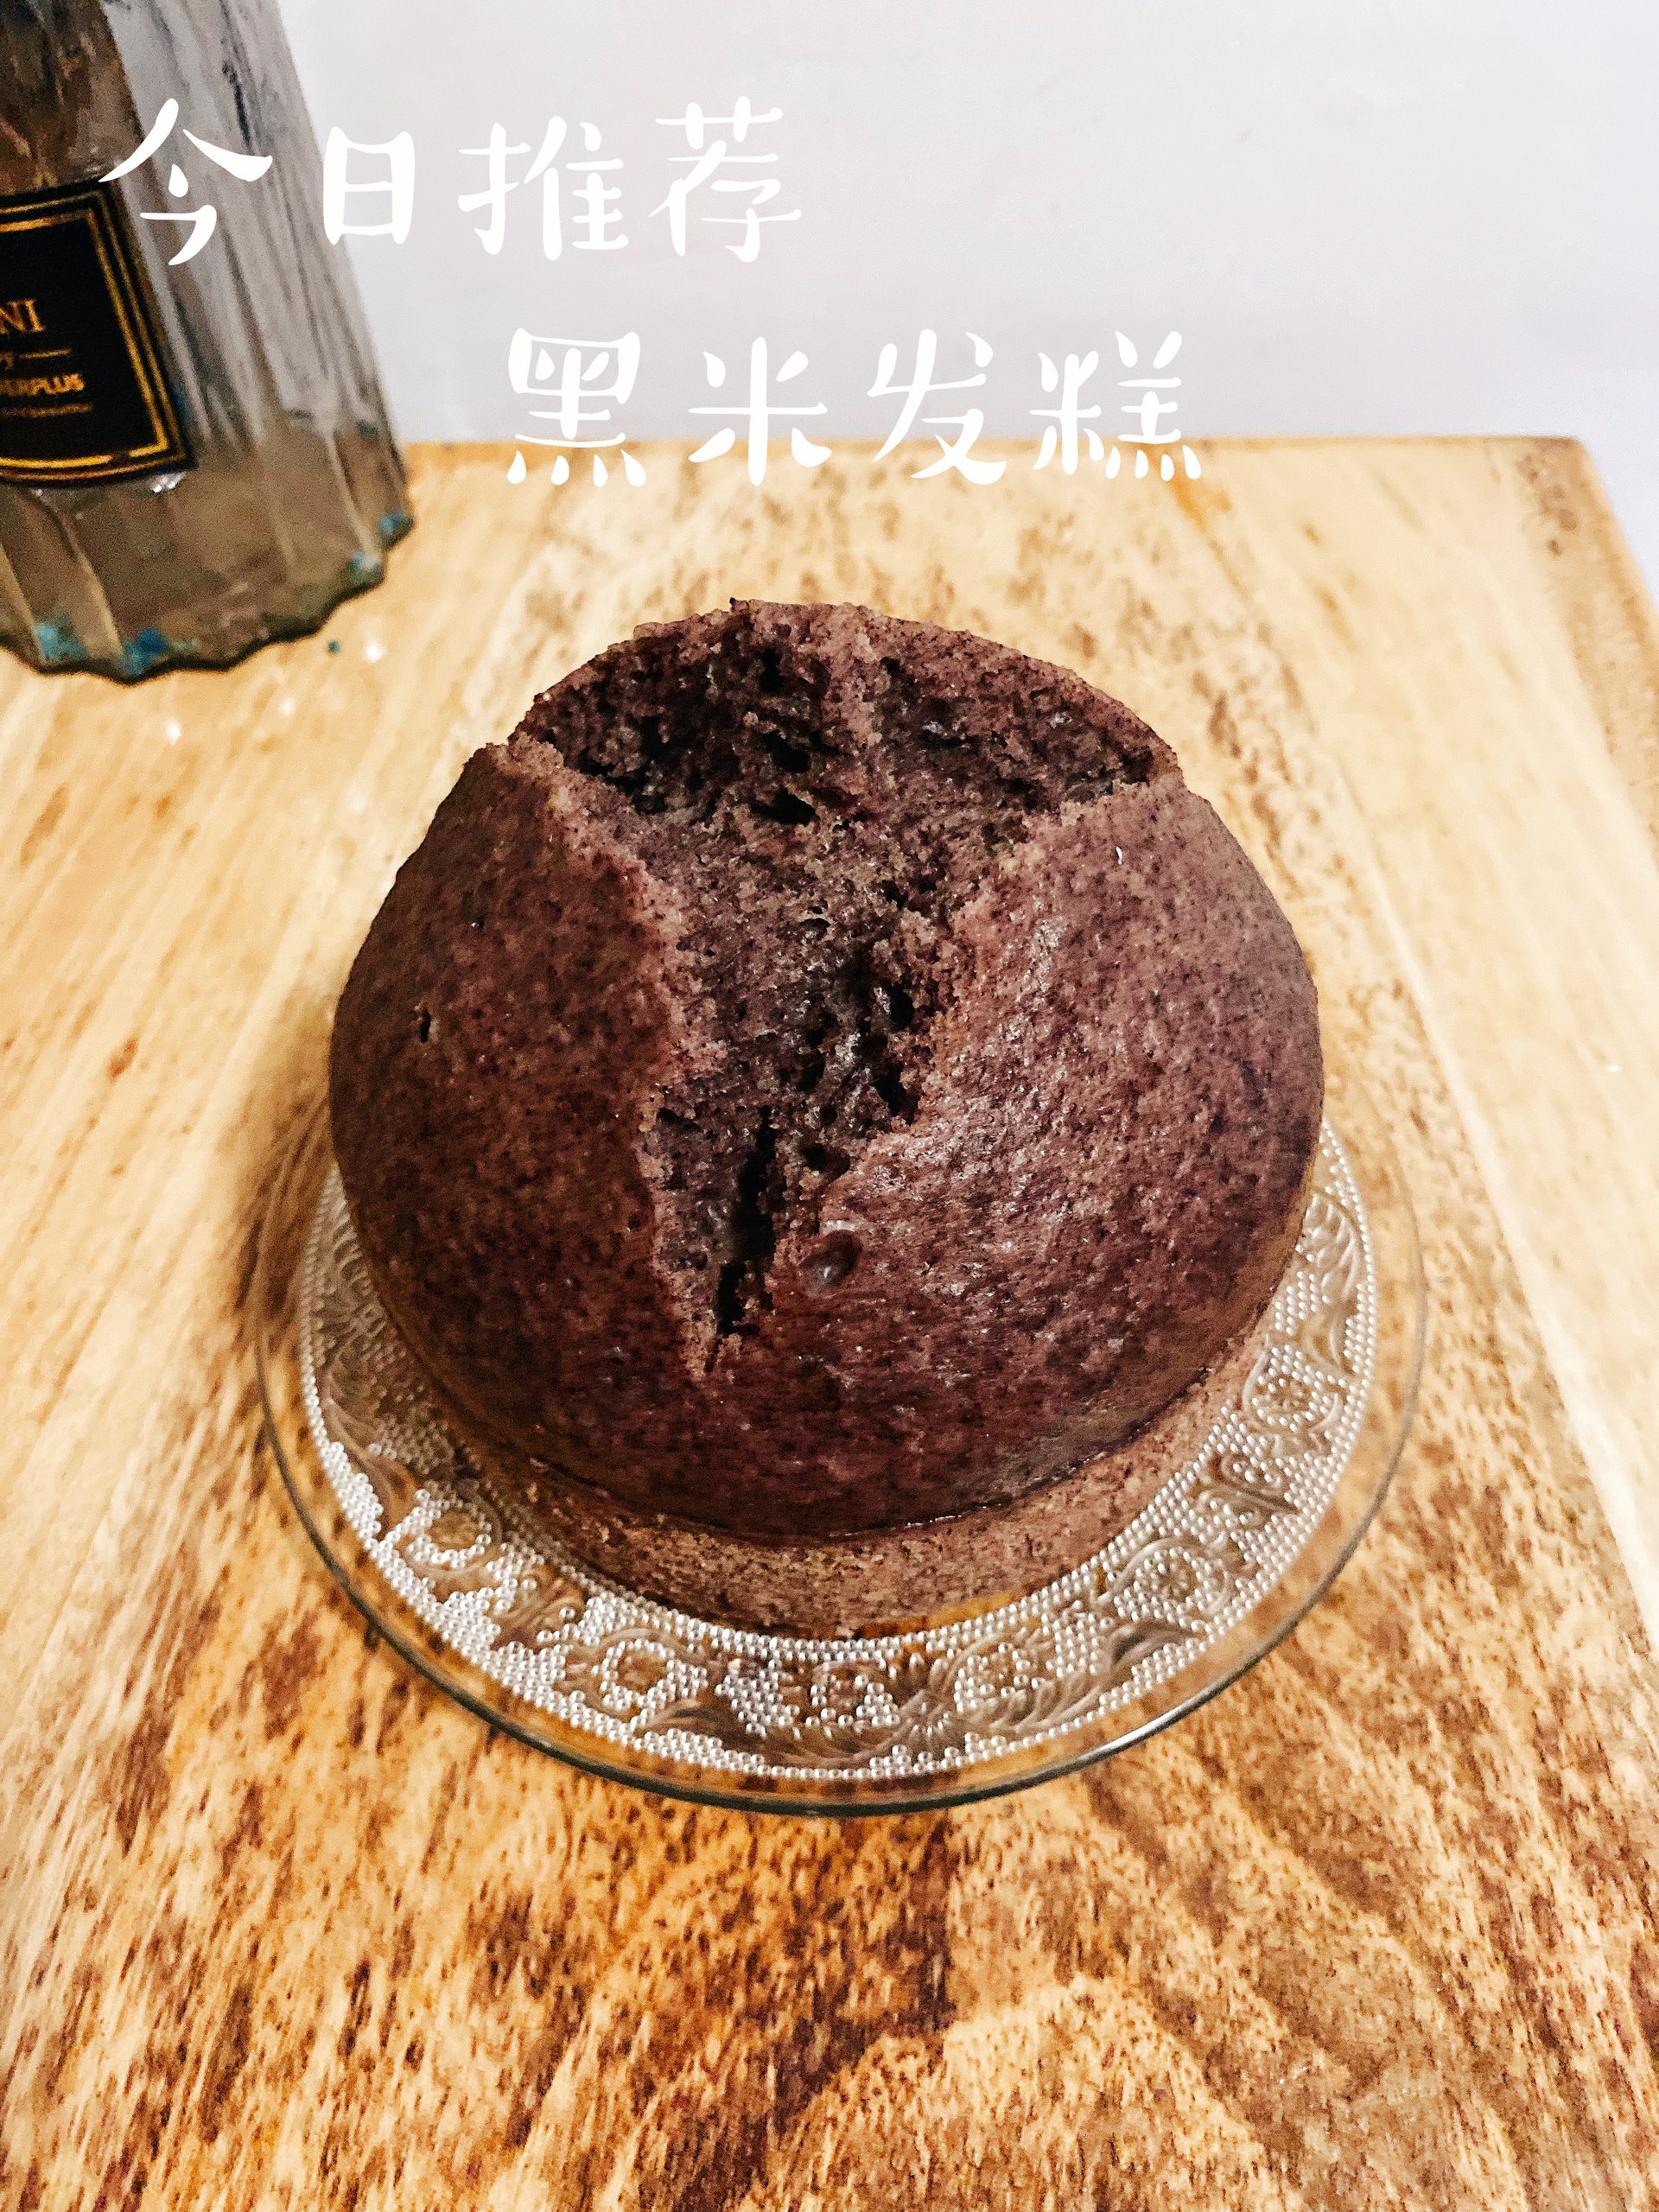 这是一只胖蘑菇黑米红糖发糕